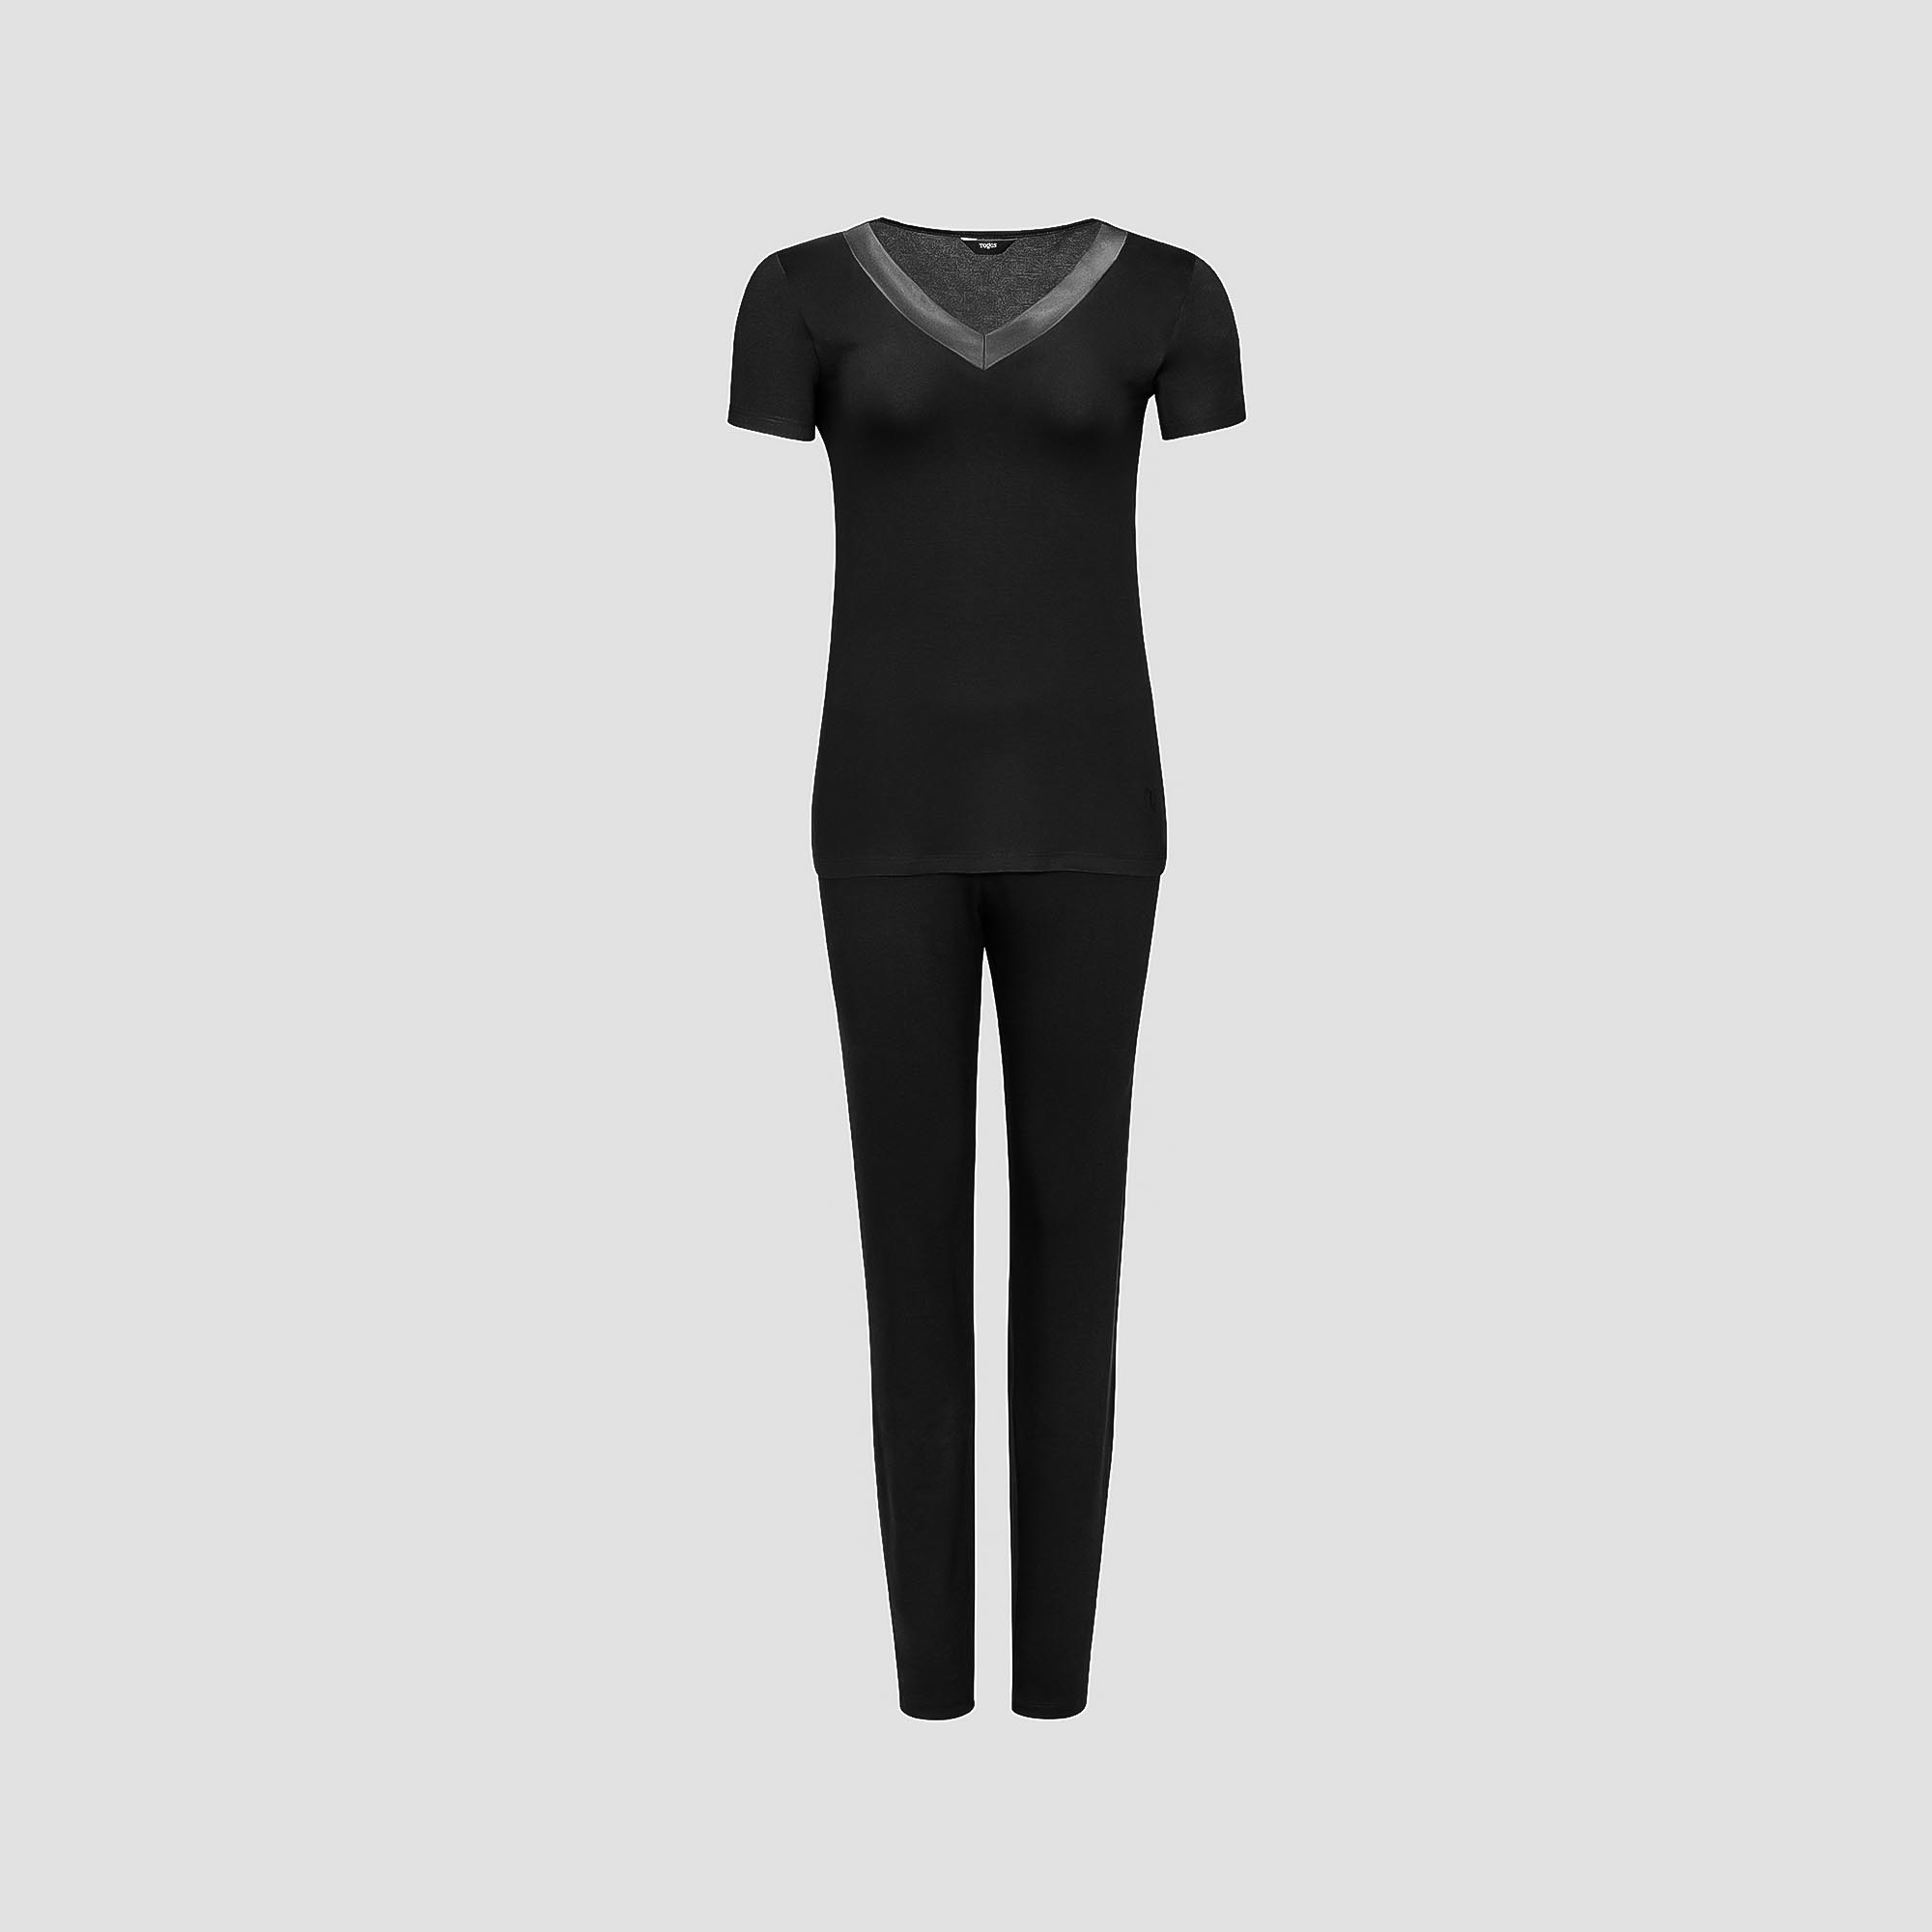 Пижама Togas Ингелла черная женская XXL(52) 2 предмета жен пижама с шортами арт 23 0098 розовый р 44